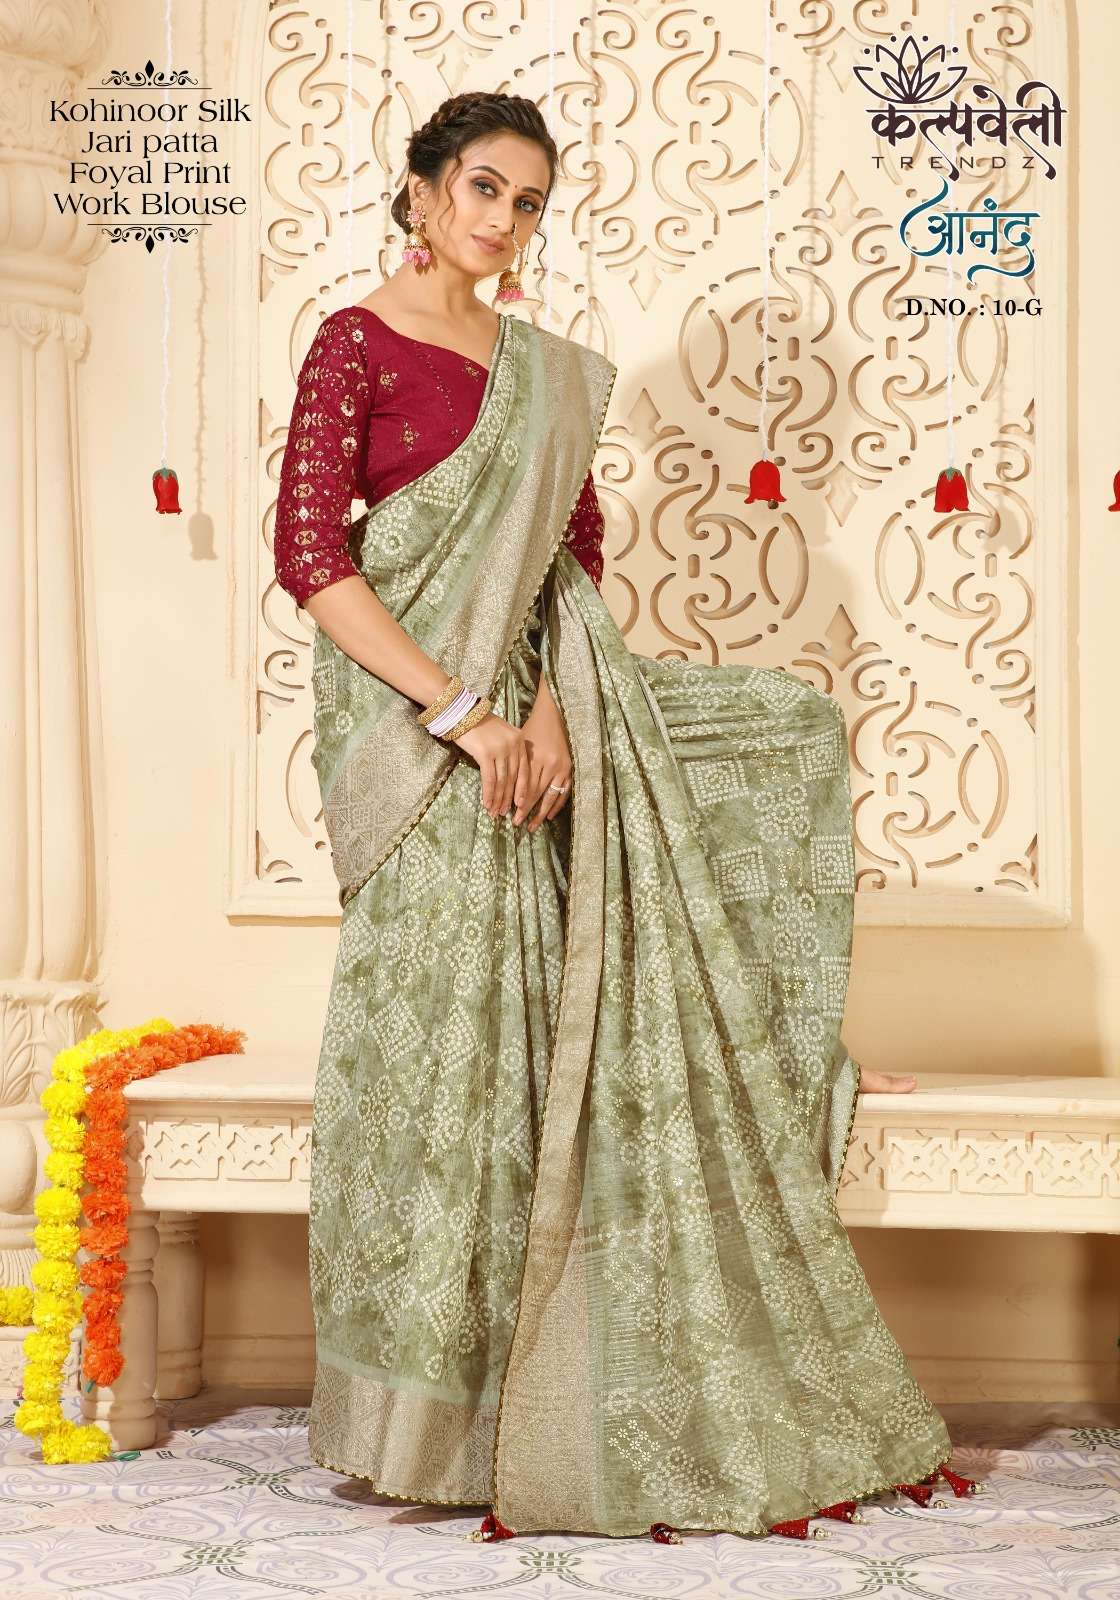 kalpavelly trendz anand 10 fancy bandhani print kohinoor silk saree wholesaler